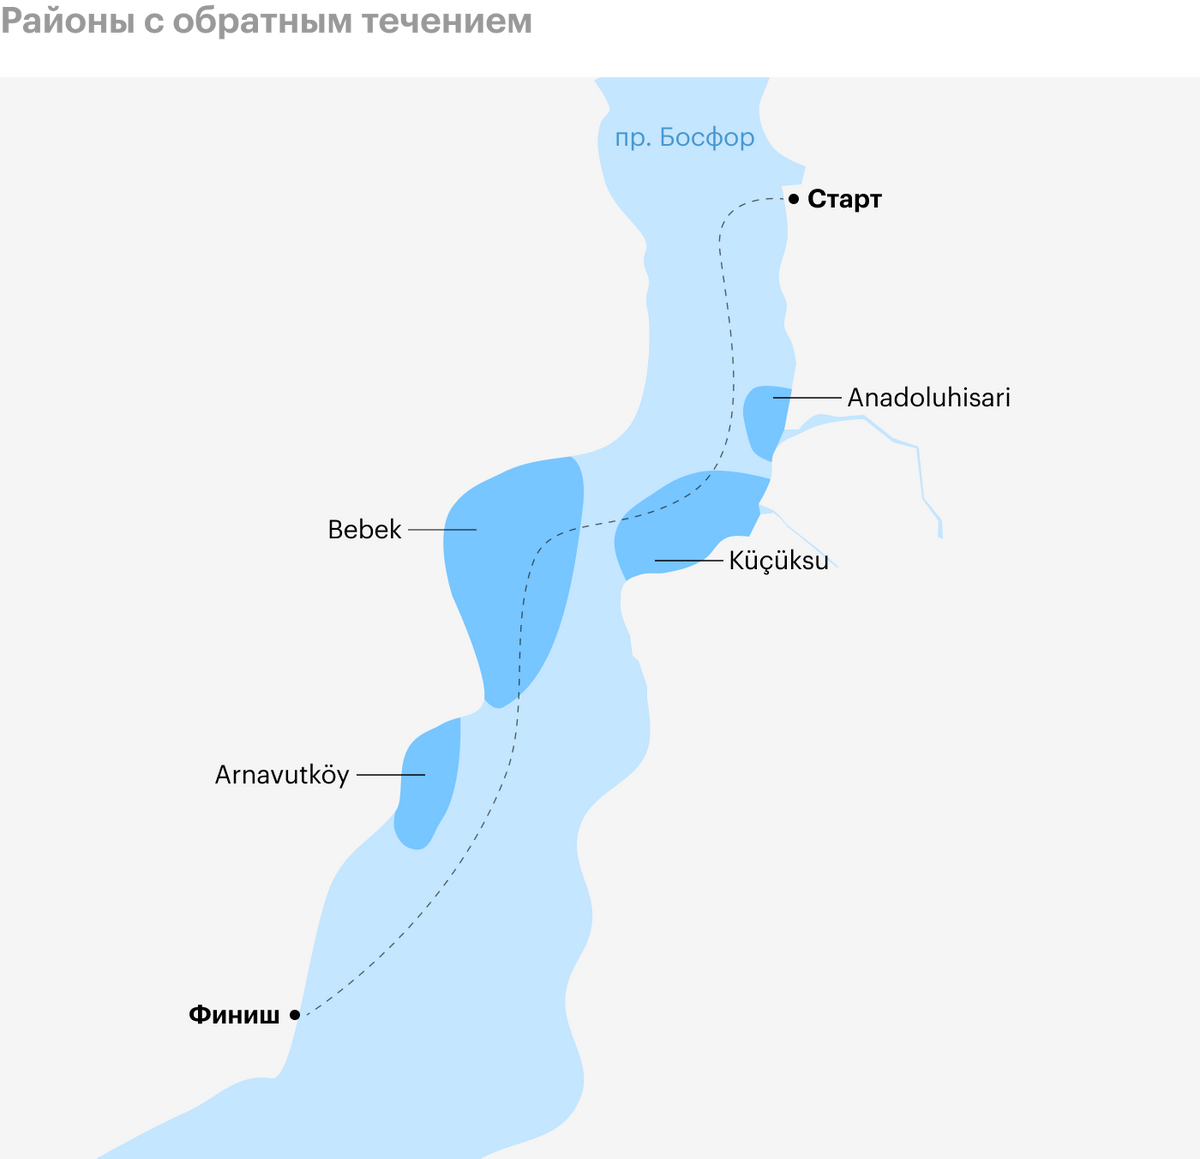 Бухты Anadoluhisari, Küçüksu, Bebek и Arnavutköy — районы с обратным течением